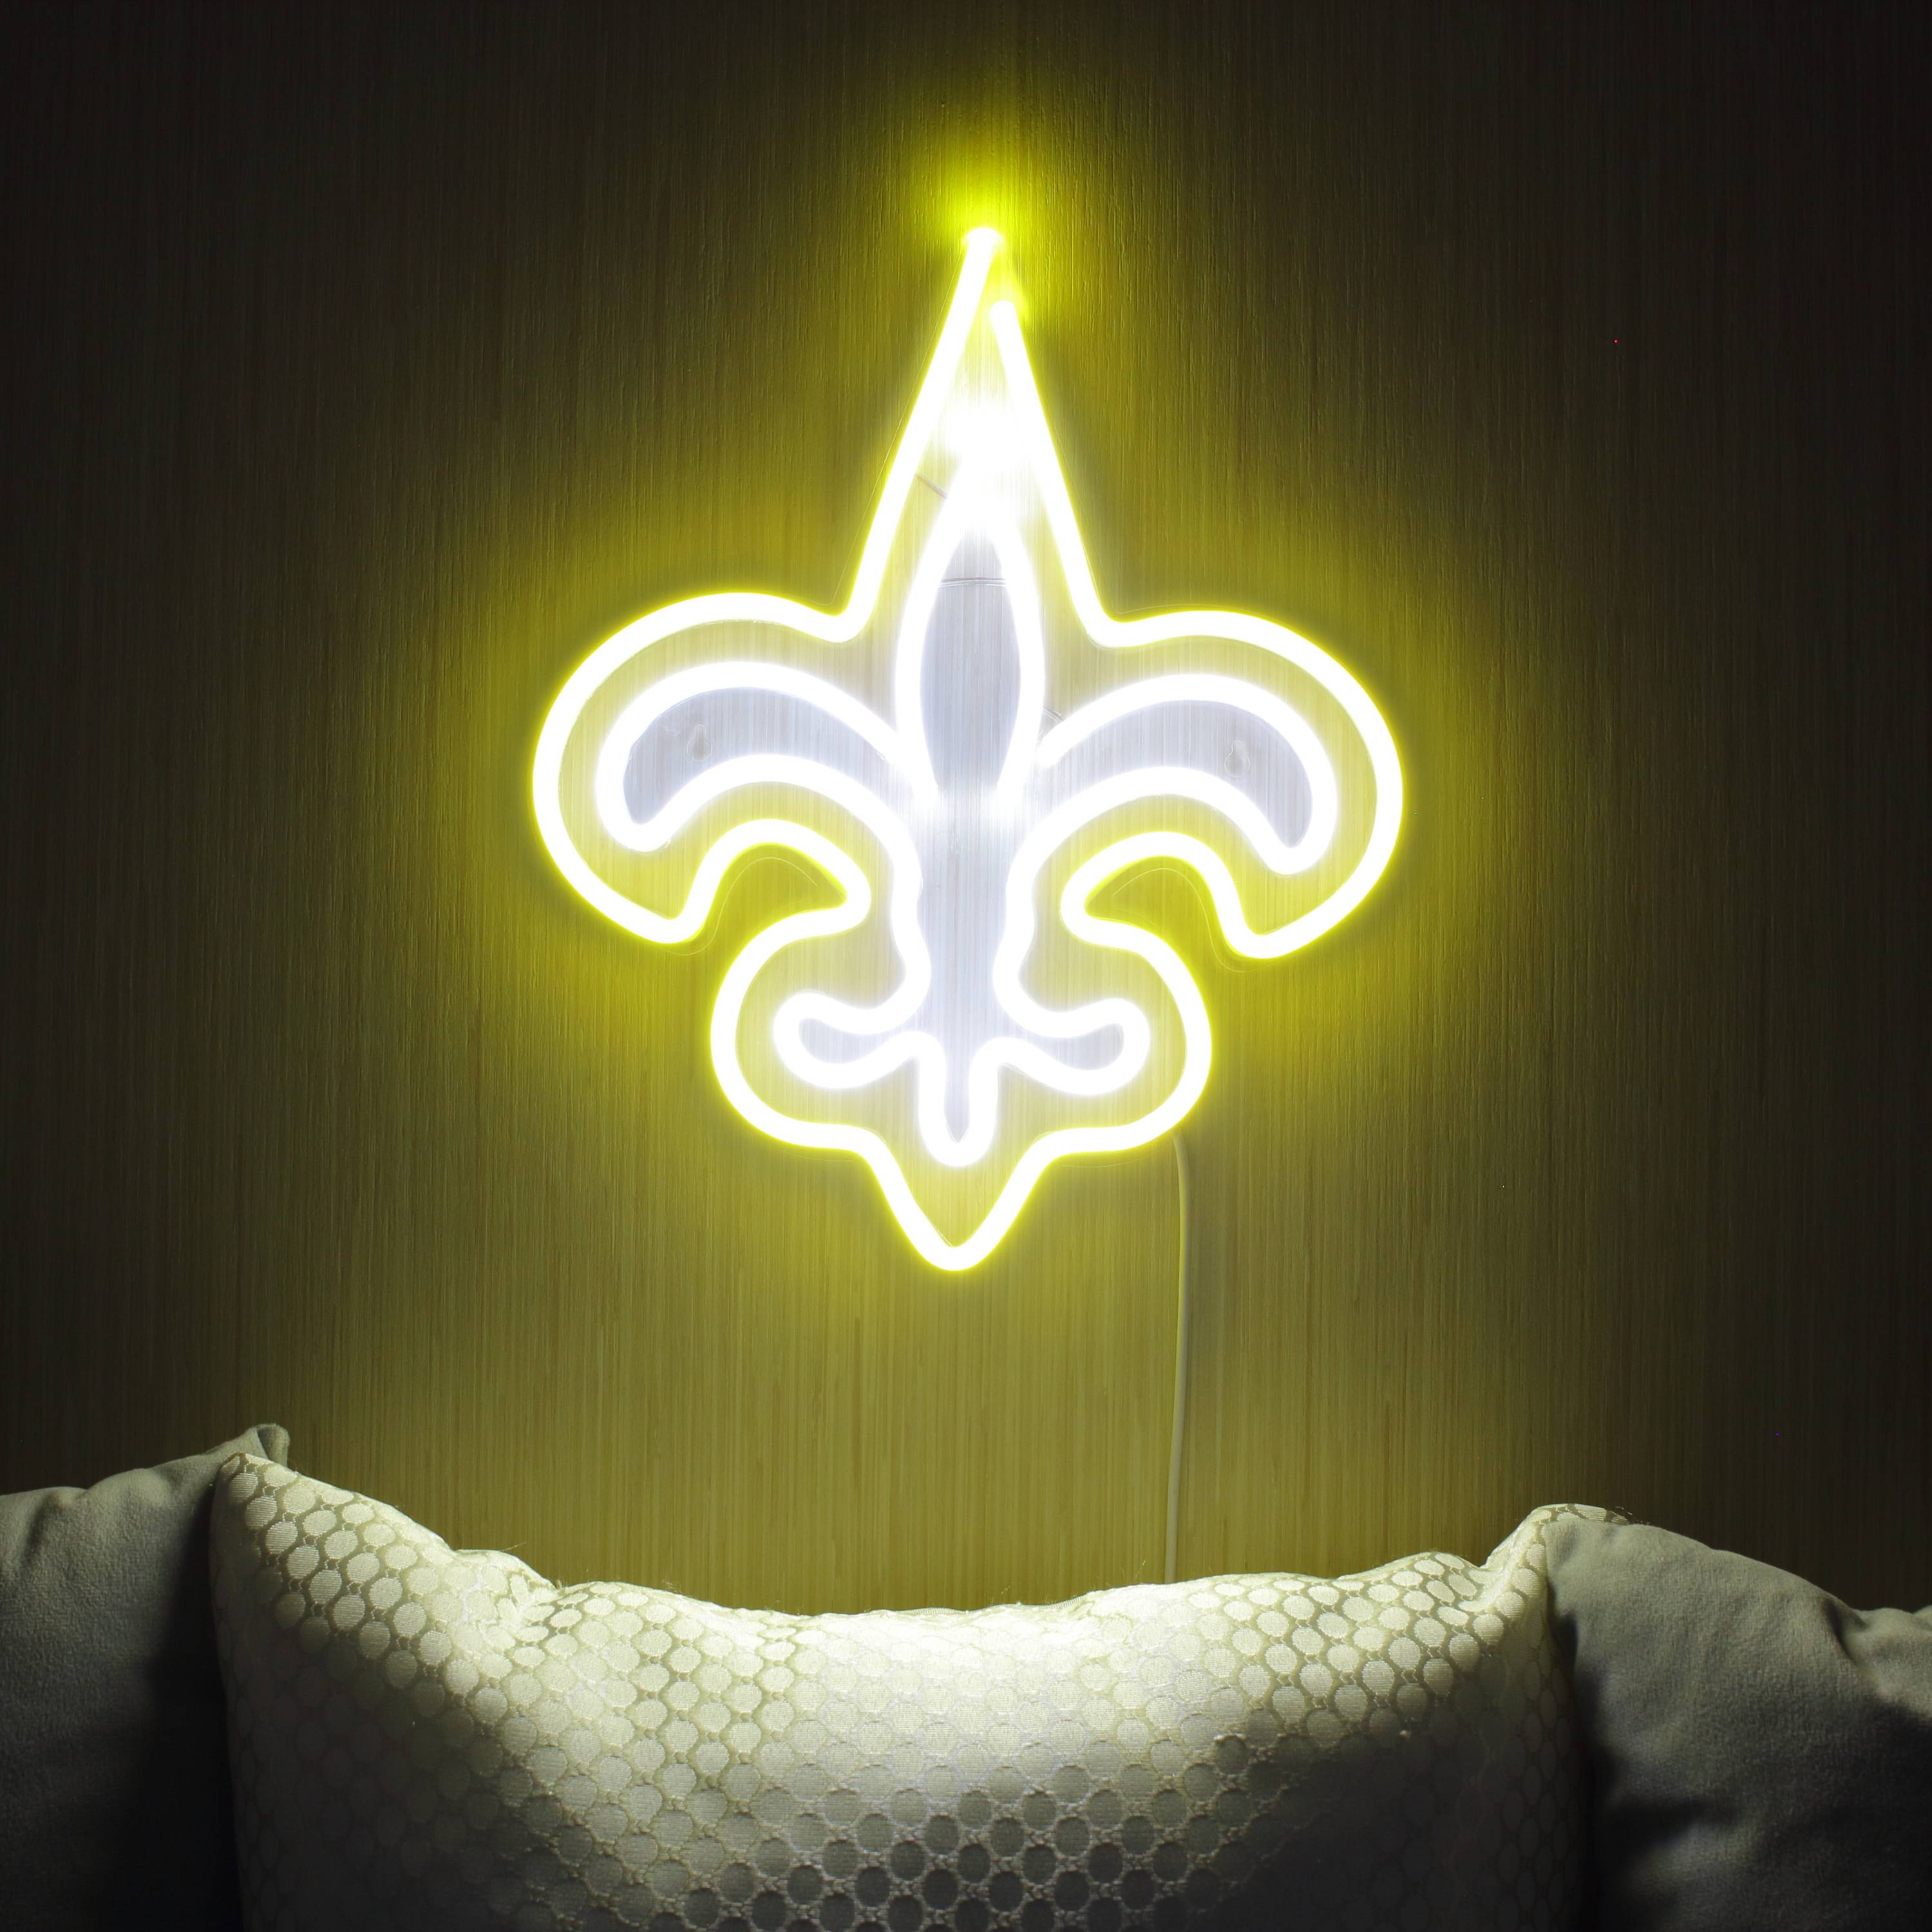 NFL New Orleans Saints Large Flex Neon LED Sign